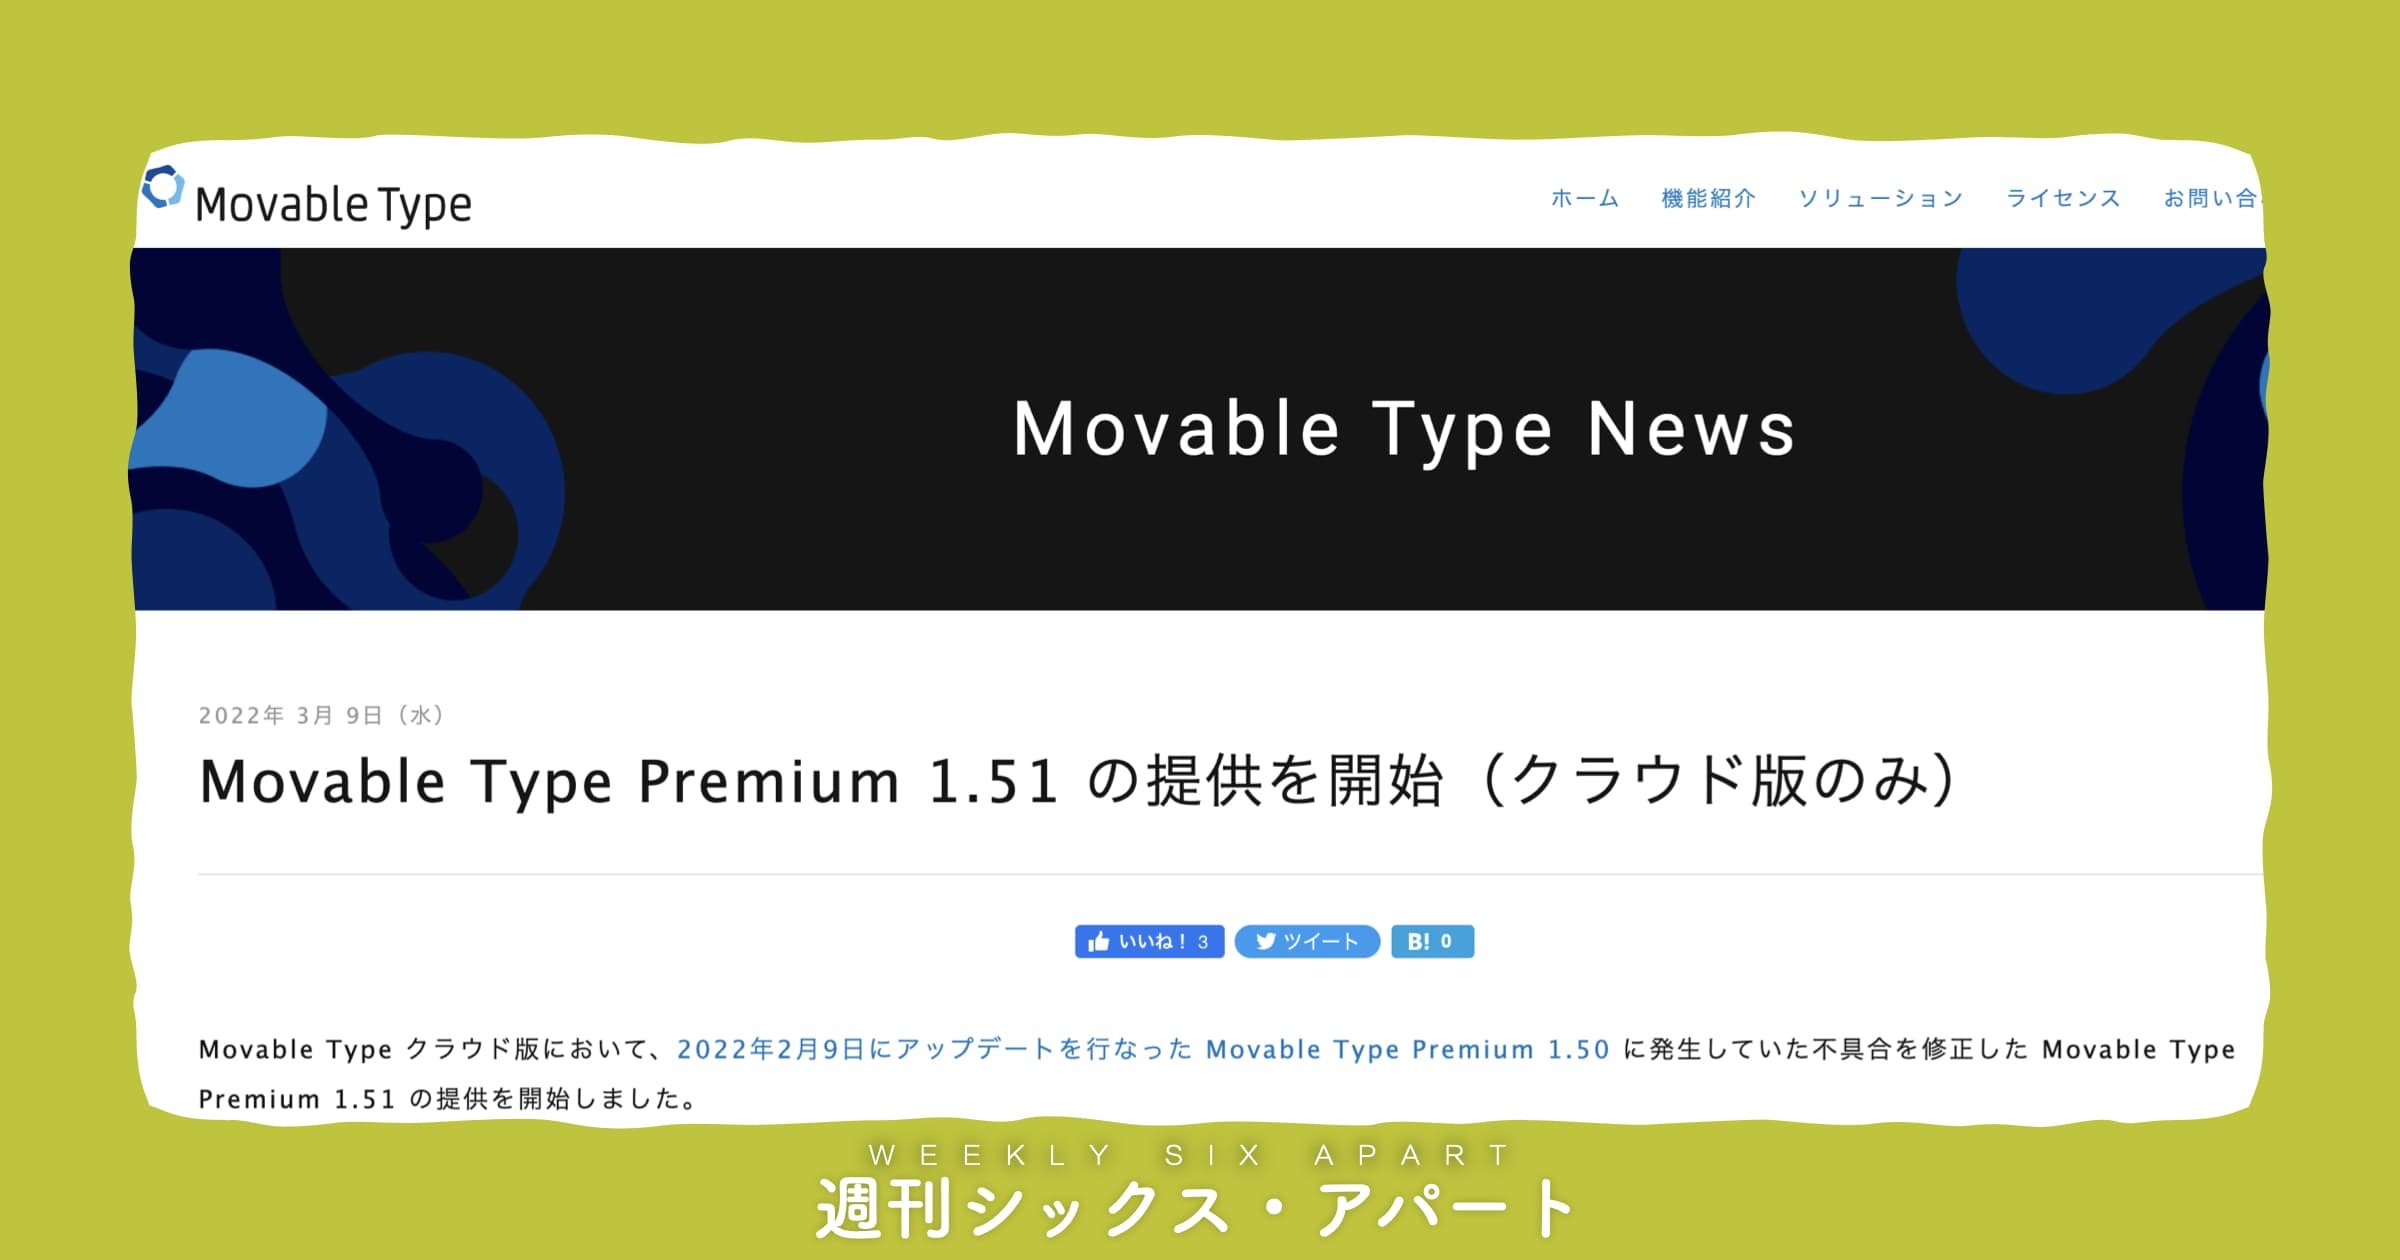 Movable Type Premium 1.51 の提供を開始しました #週刊SA